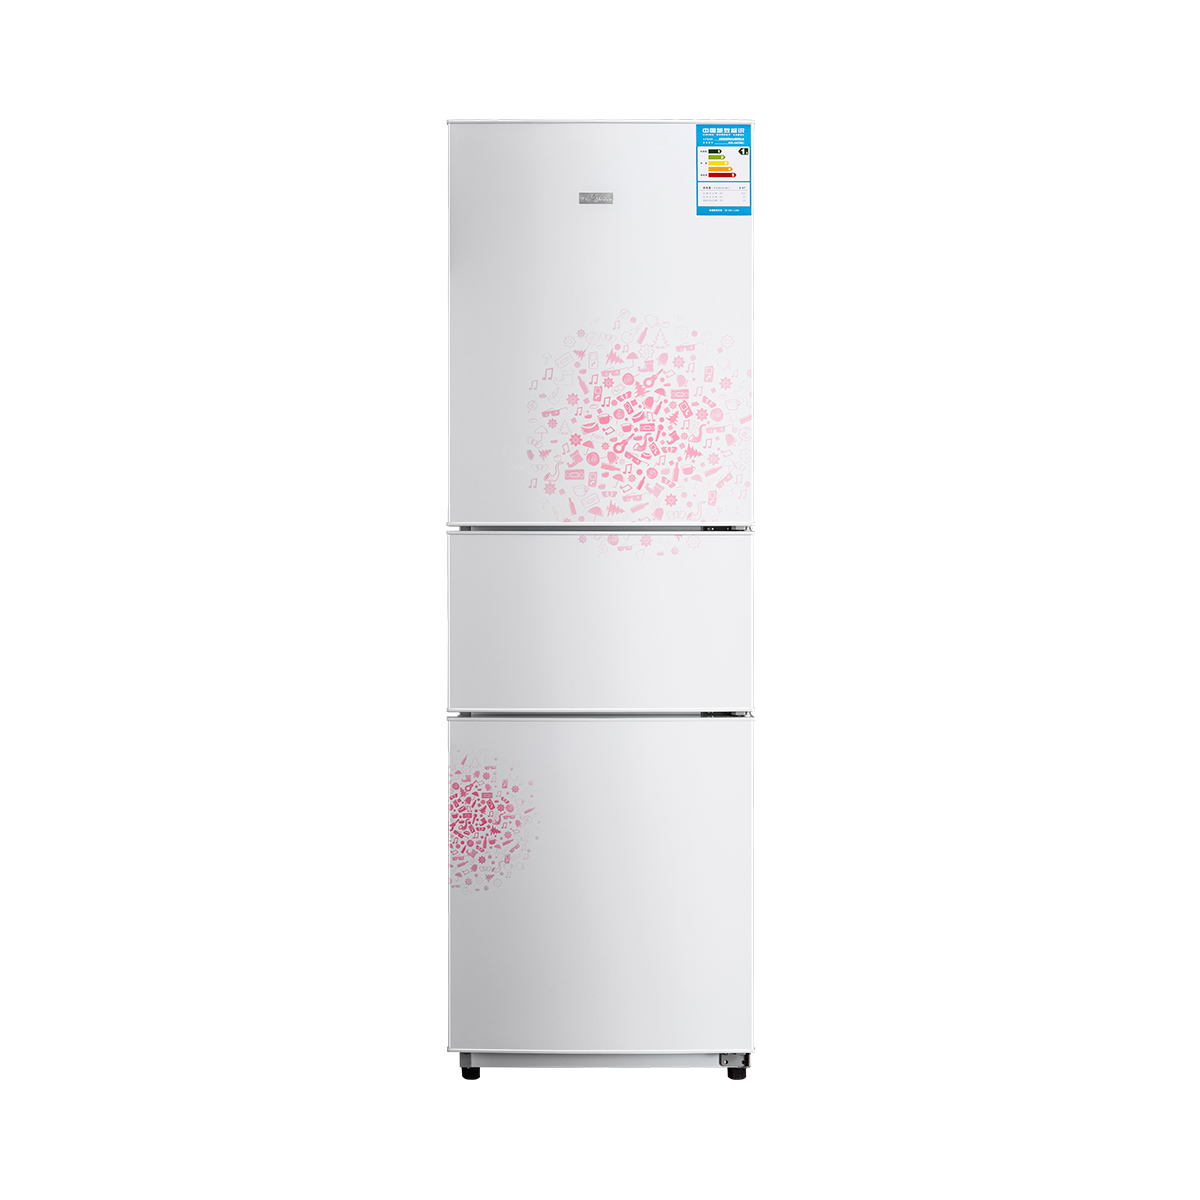 Midea/美的 MD冰箱BCD-206TM(E)妙趣白冰箱 说明书.pdf